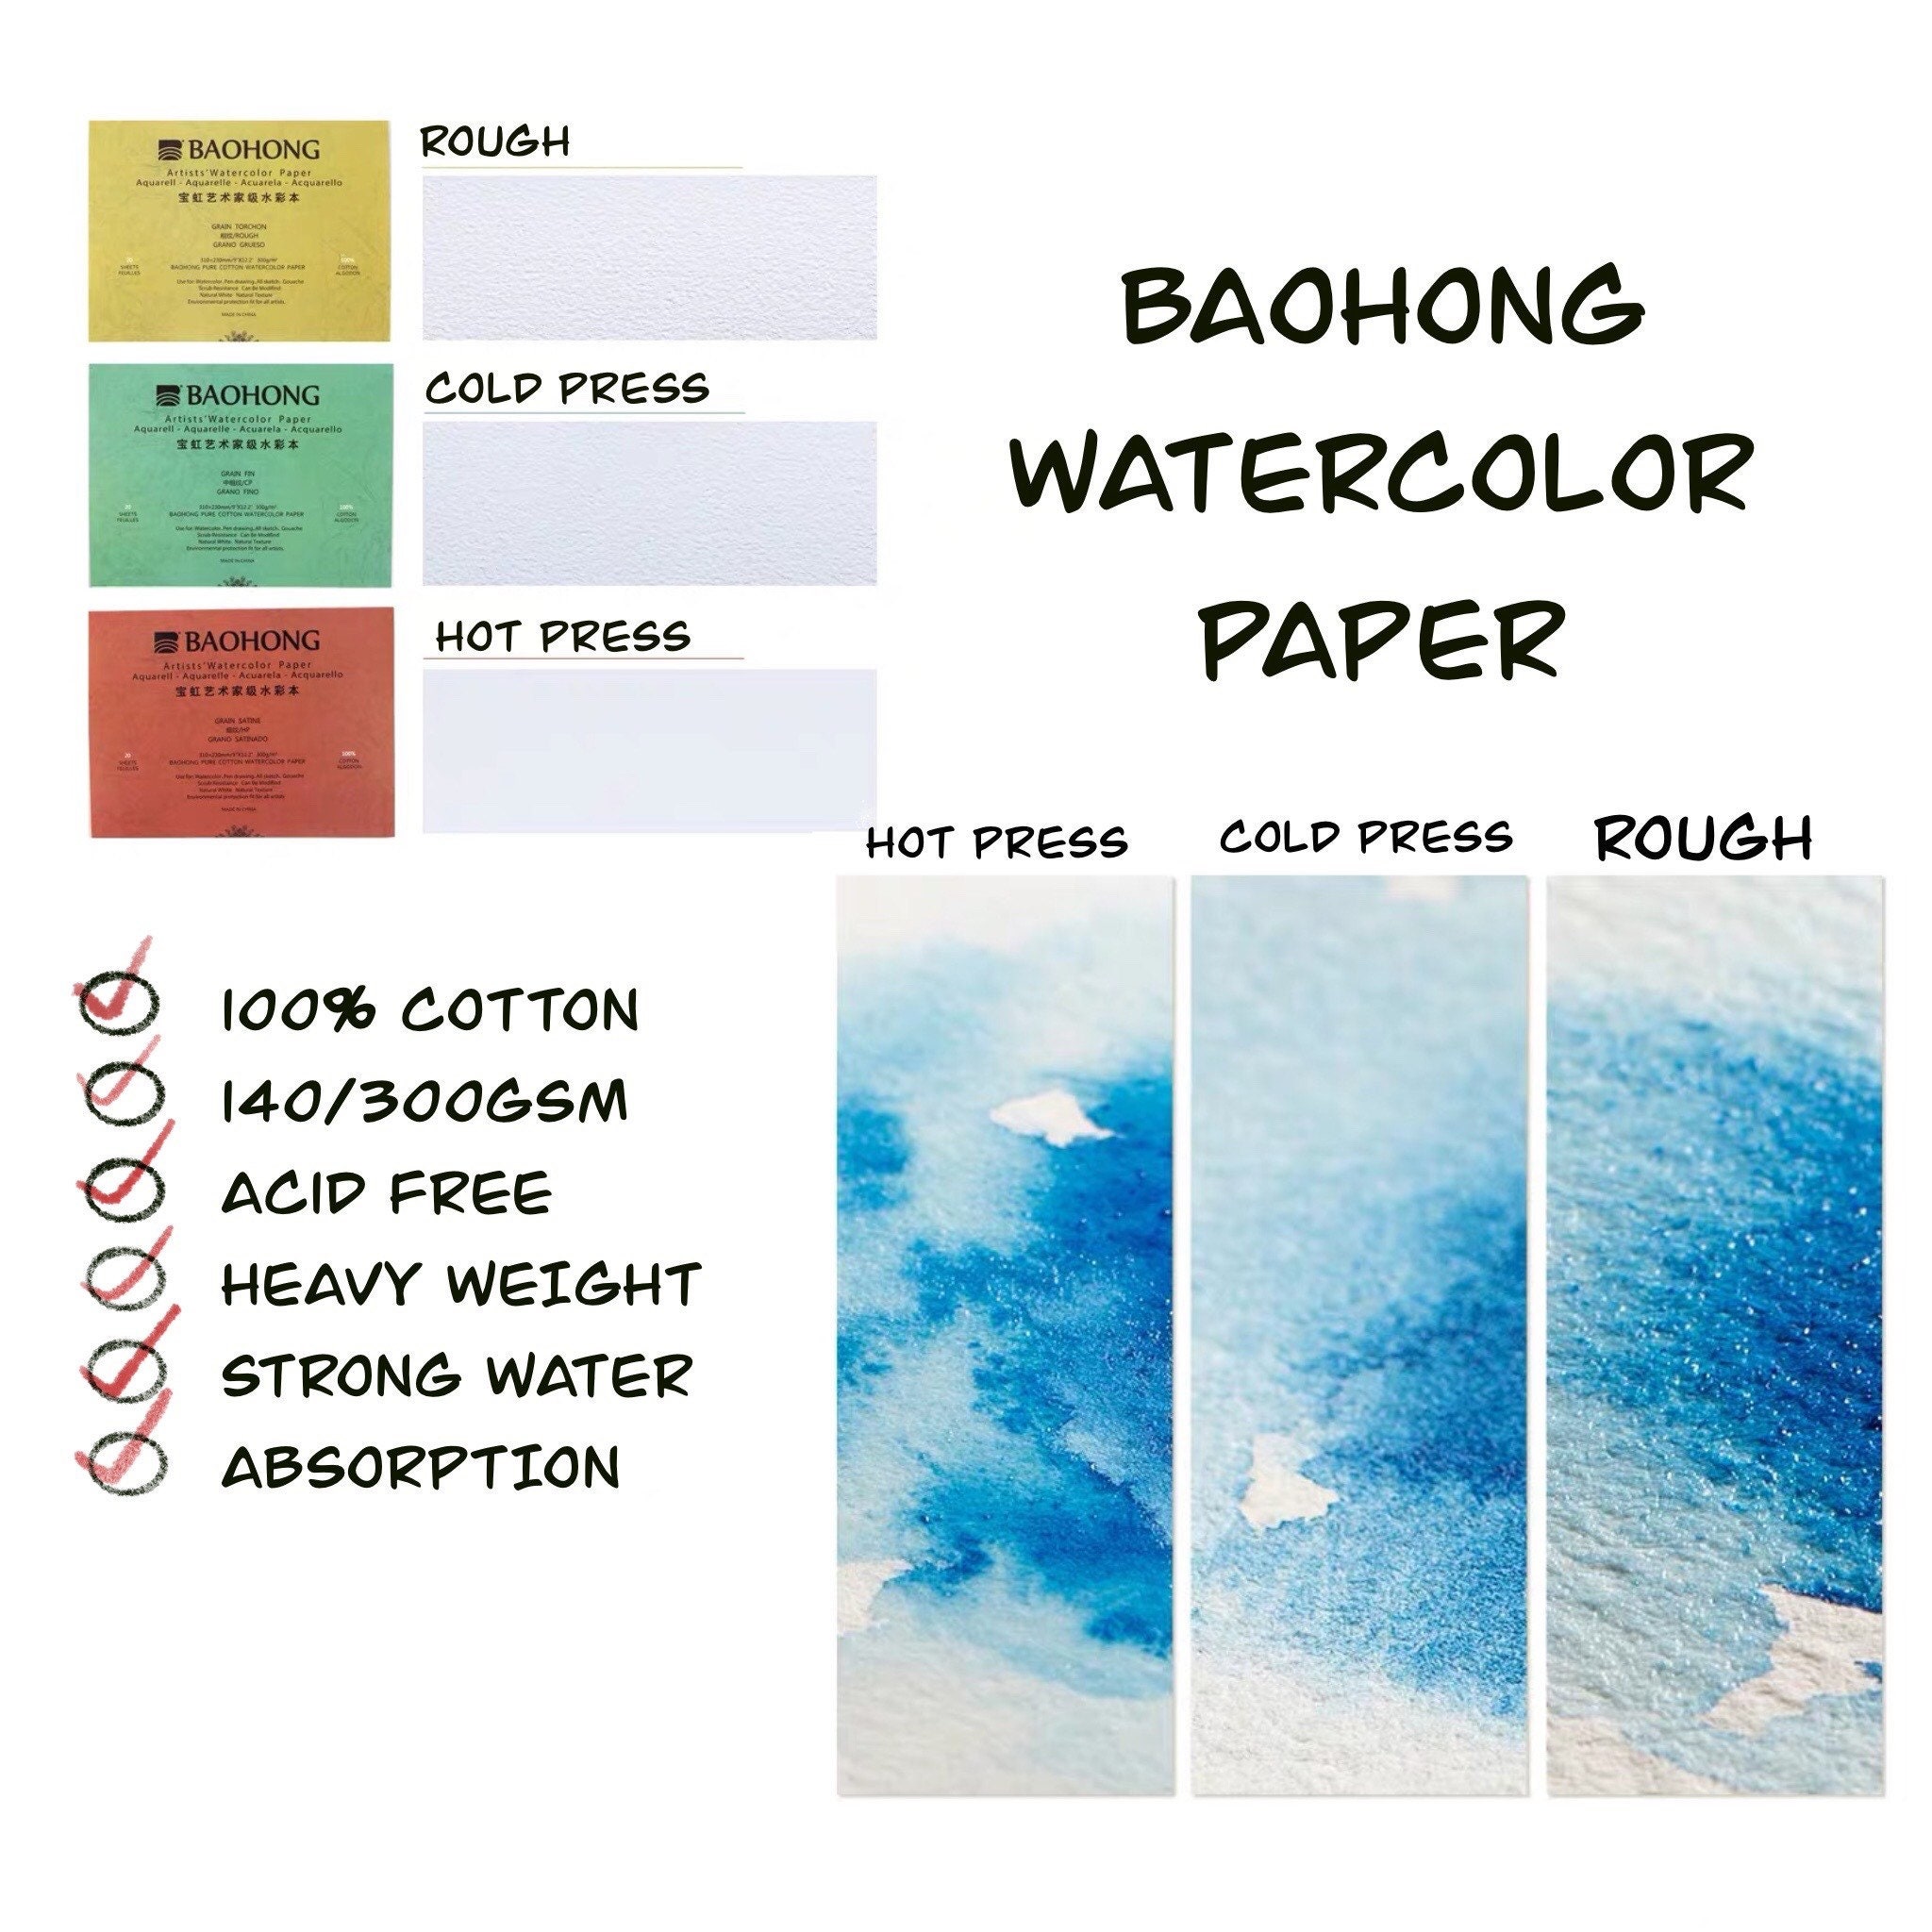  Baohong Watercolor Paper, 190x130mm Sample Pack, 100